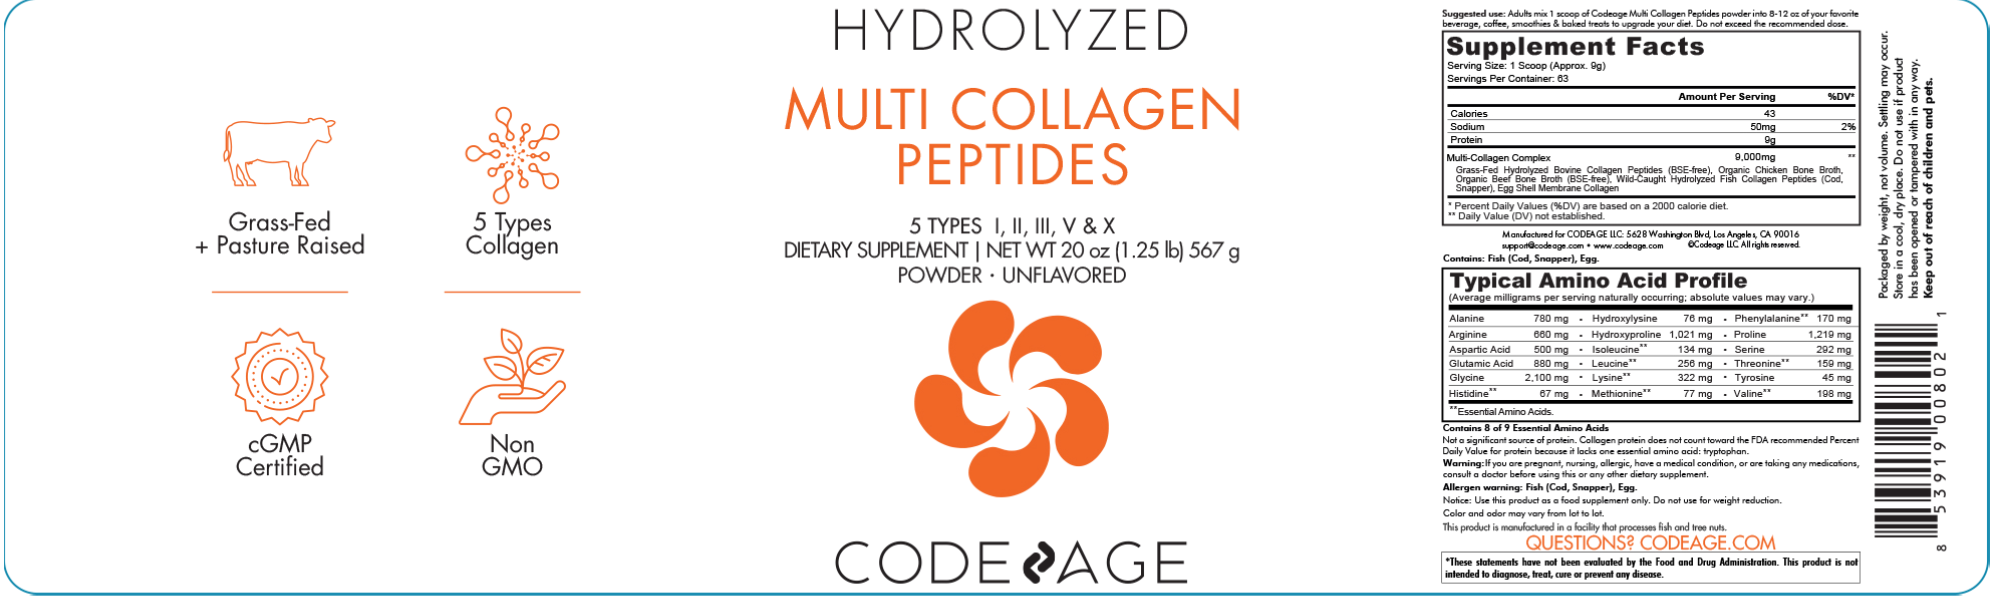 Multi Collagen Peptides Powder 20 oz label ingredients